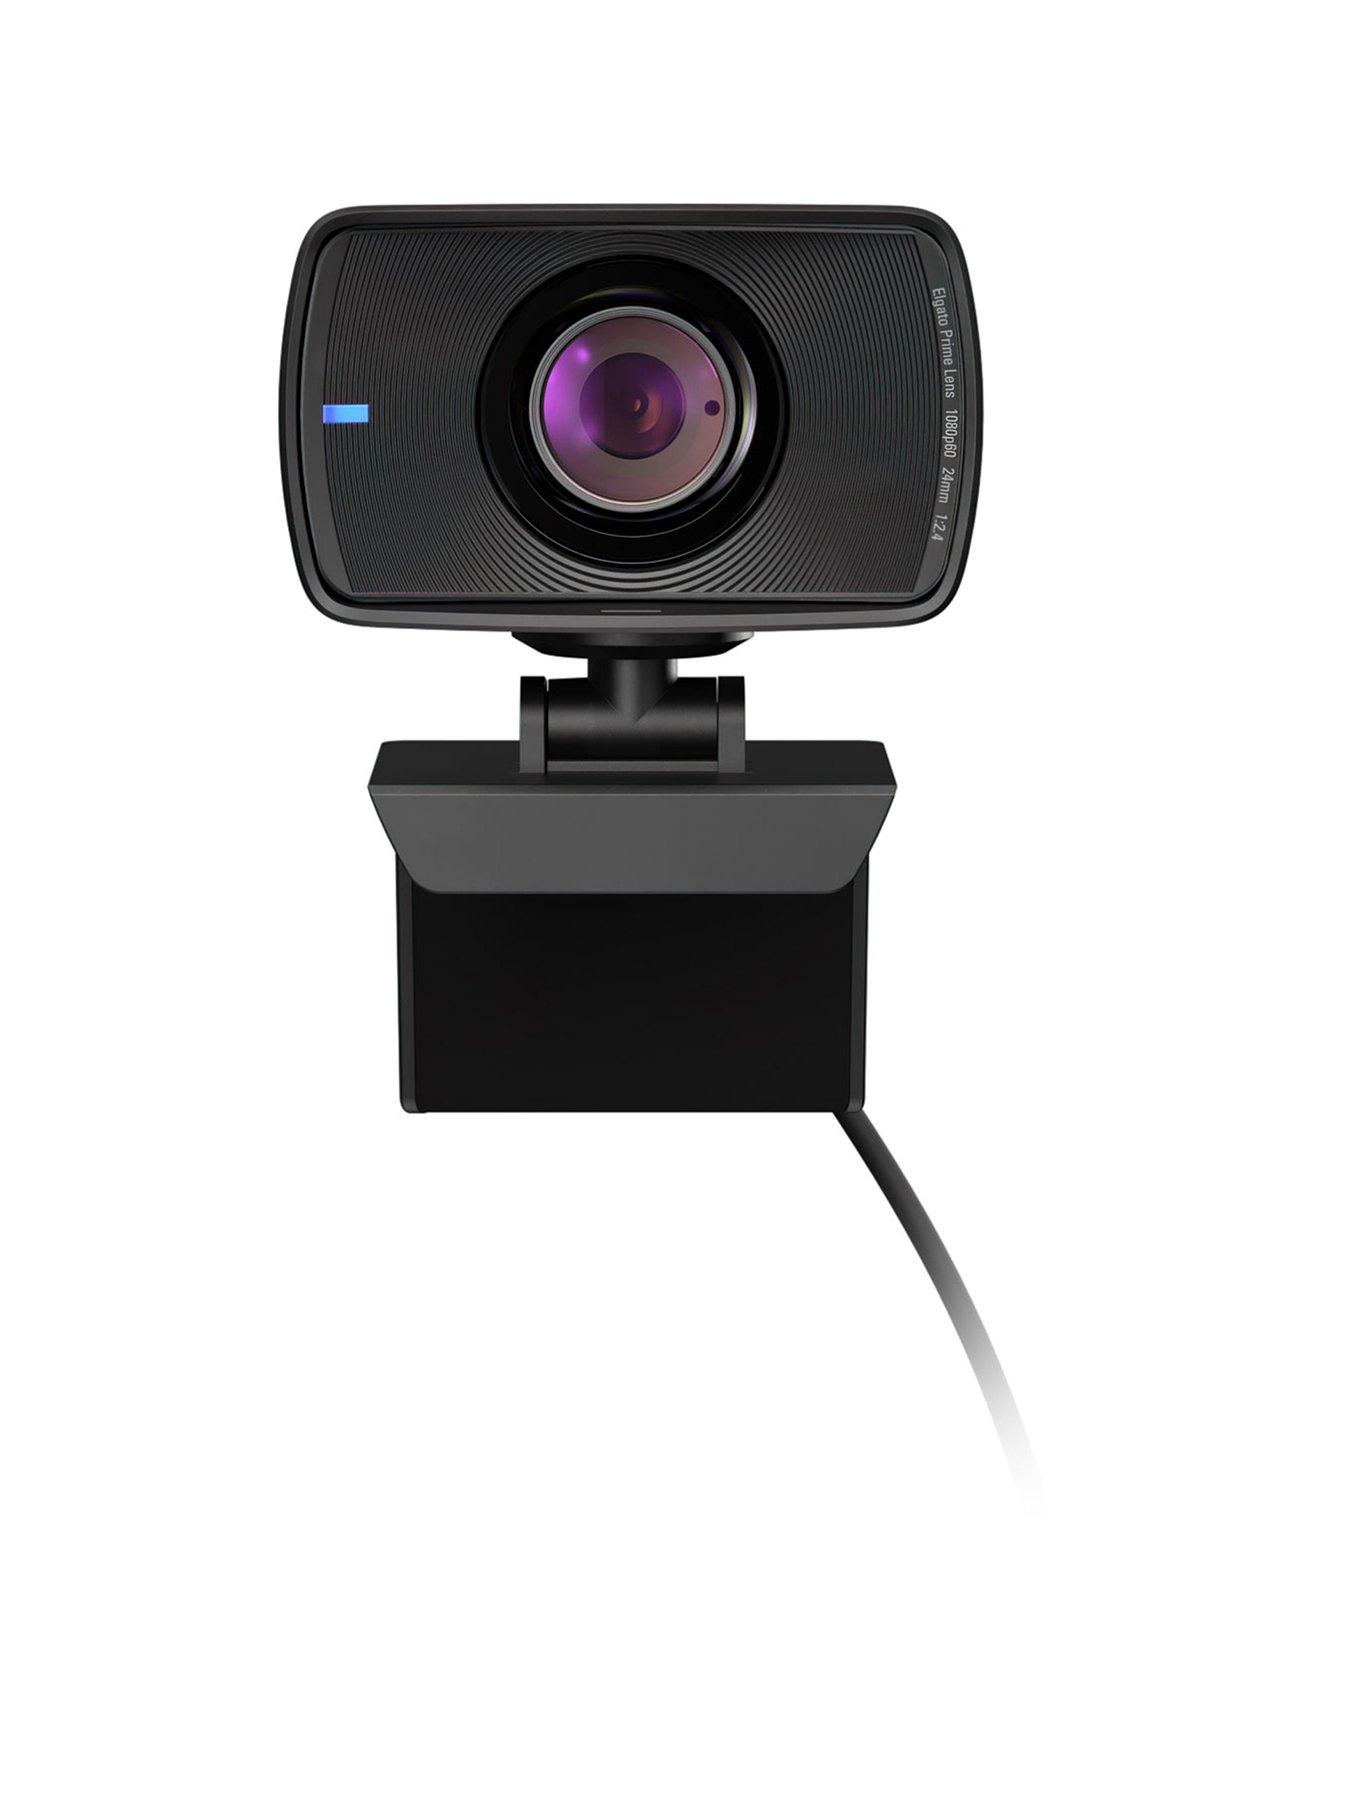 Elgato Facecam - webcam - 10WAA9901 - Webcams 